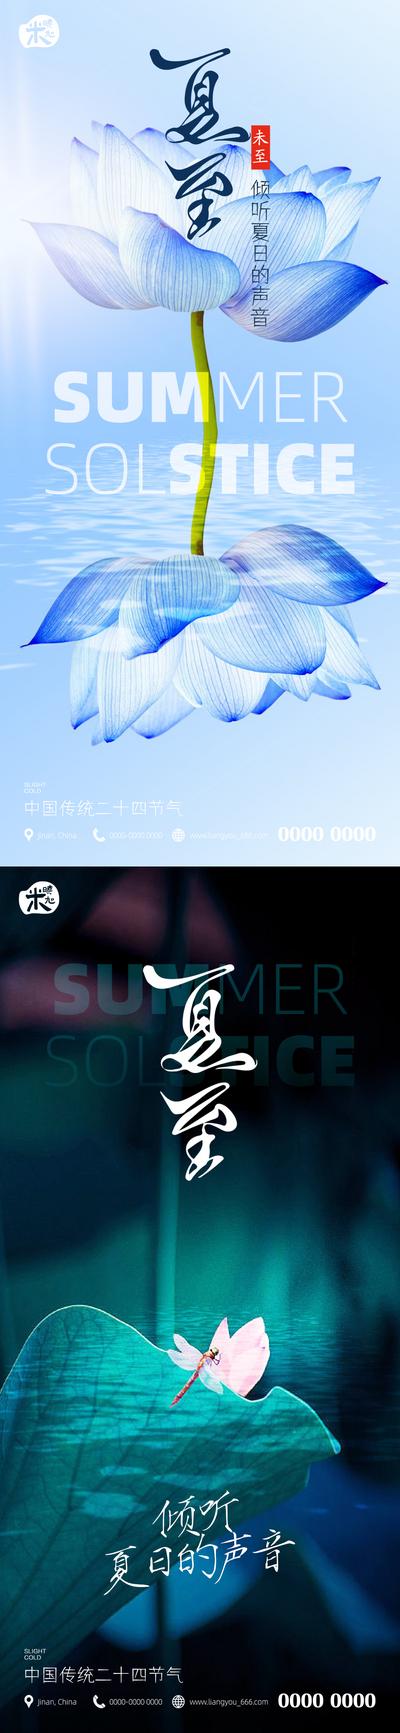 南门网 广告 海报 节气 夏至 节日 系列 传统节气 荷花 简约 蜻蜓 夏